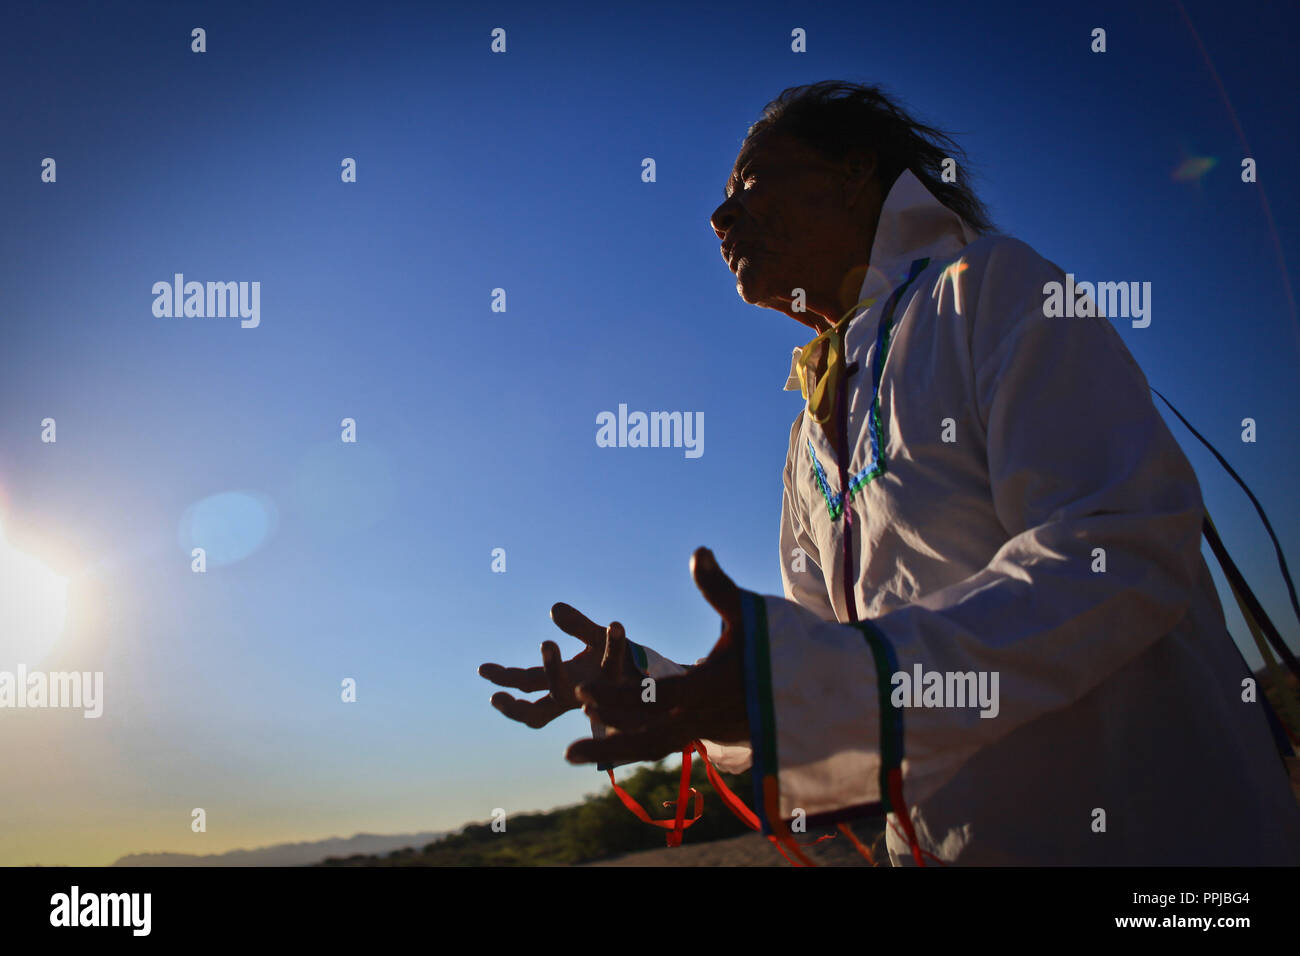 Francisco Barnet, chaman de la Seri groupe ethnique, enrichie au El CHAPO dans Comcaa la Nation, Punta Chueca dans le désert de Sonora au Mexique. Rituel, une Banque D'Images